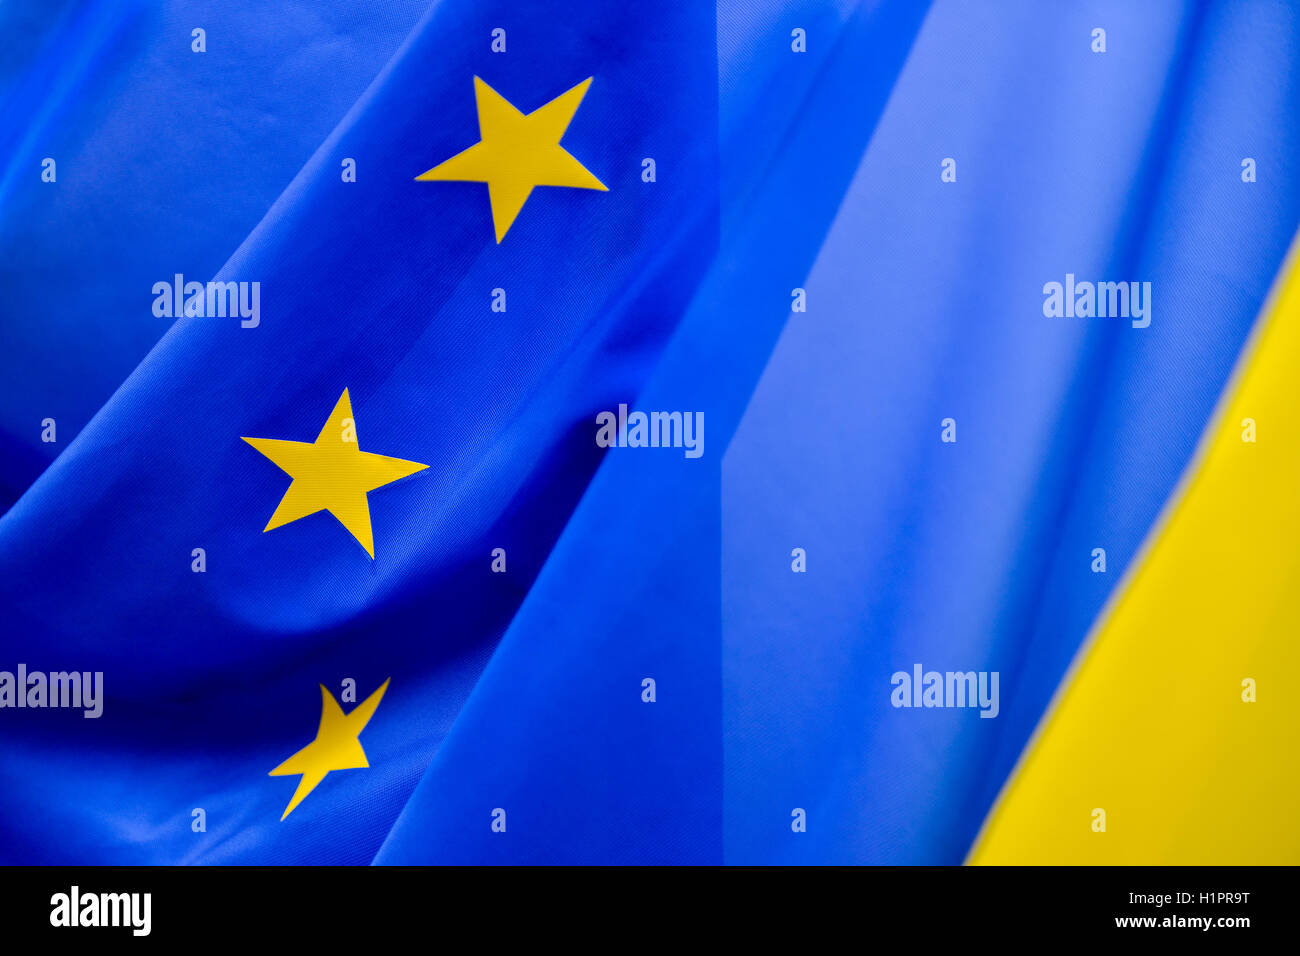 Comunidad Europea bandera con estrellas amarillas Foto de stock